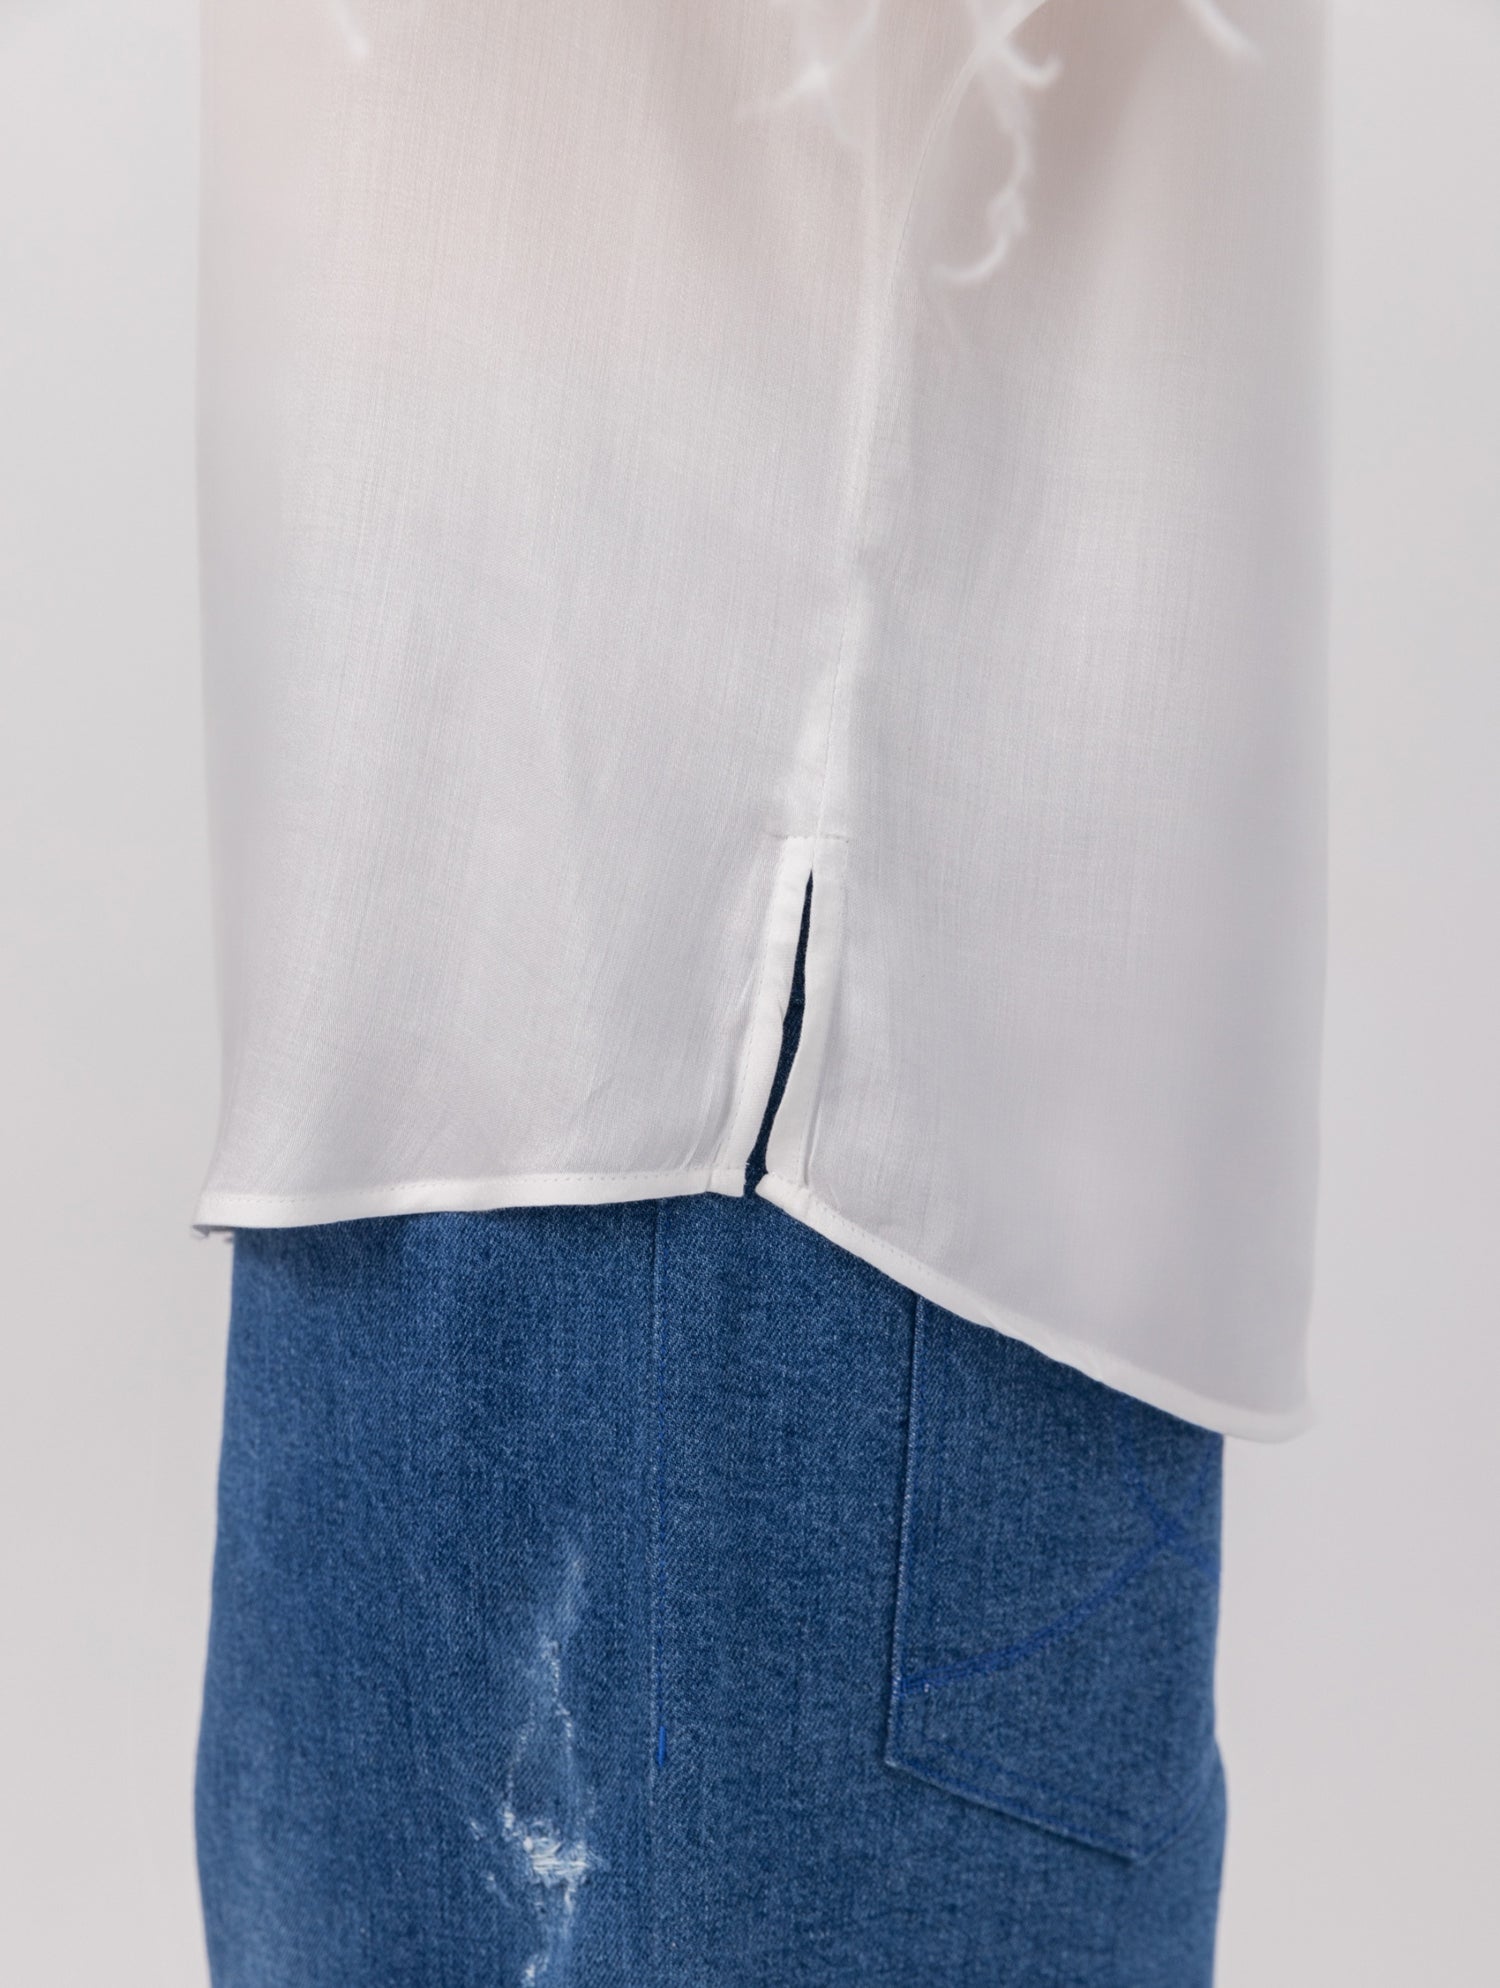 Halblang-Arm T-Shirt aus Viskose mit Federn am Arm zum an -und abknöpfen